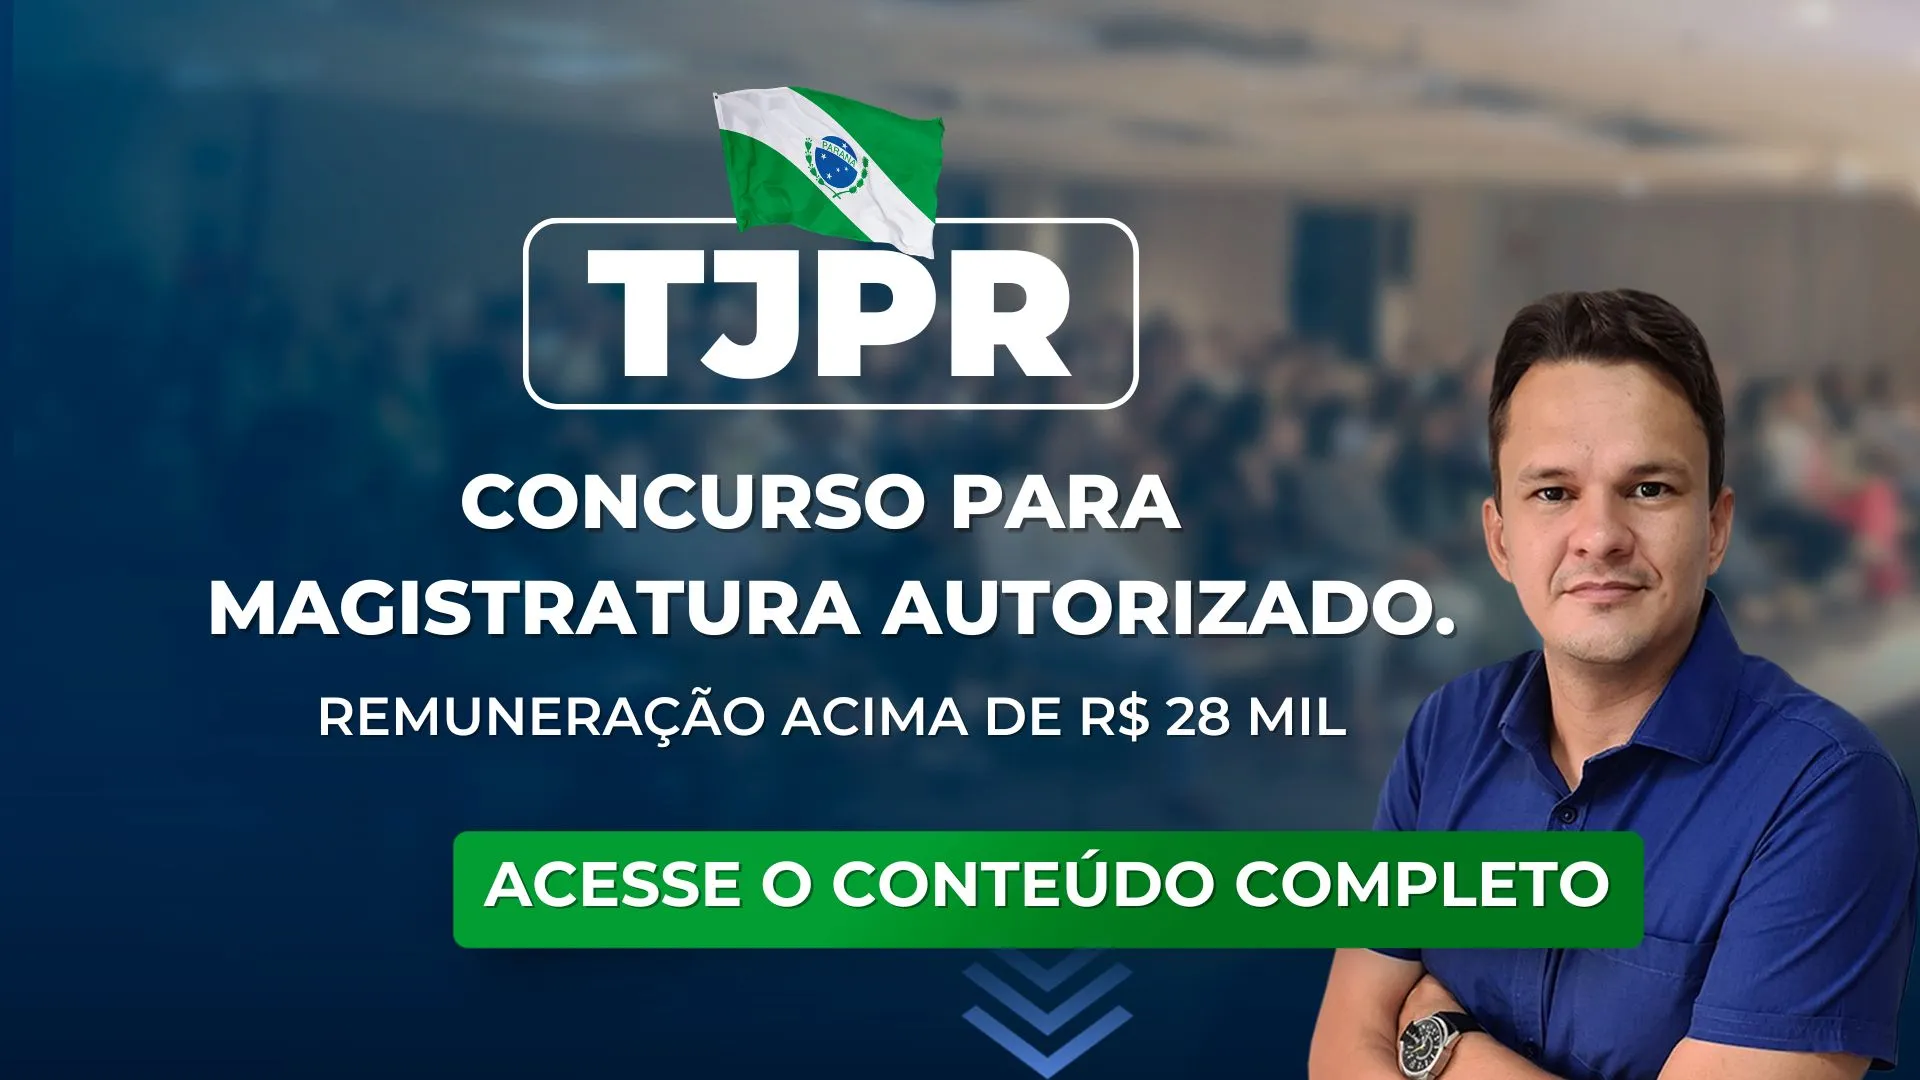 TJPR: Concurso para Magistratura autorizado. Remuneração acima de R$ 28 mil.